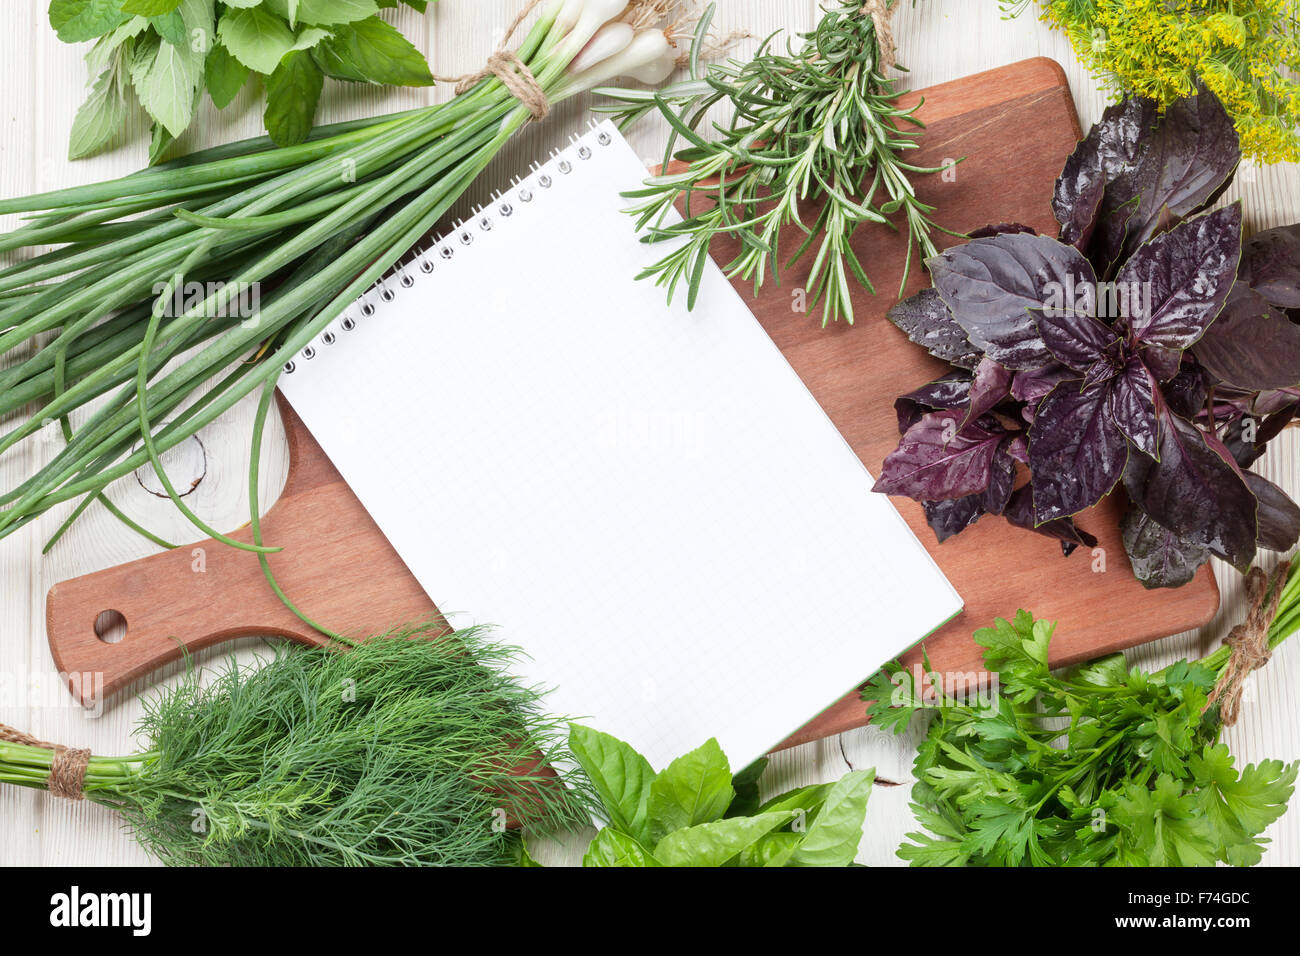 Las hierbas del jardín fresco y el bloc de notas para tus recetas en la mesa de madera Foto de stock